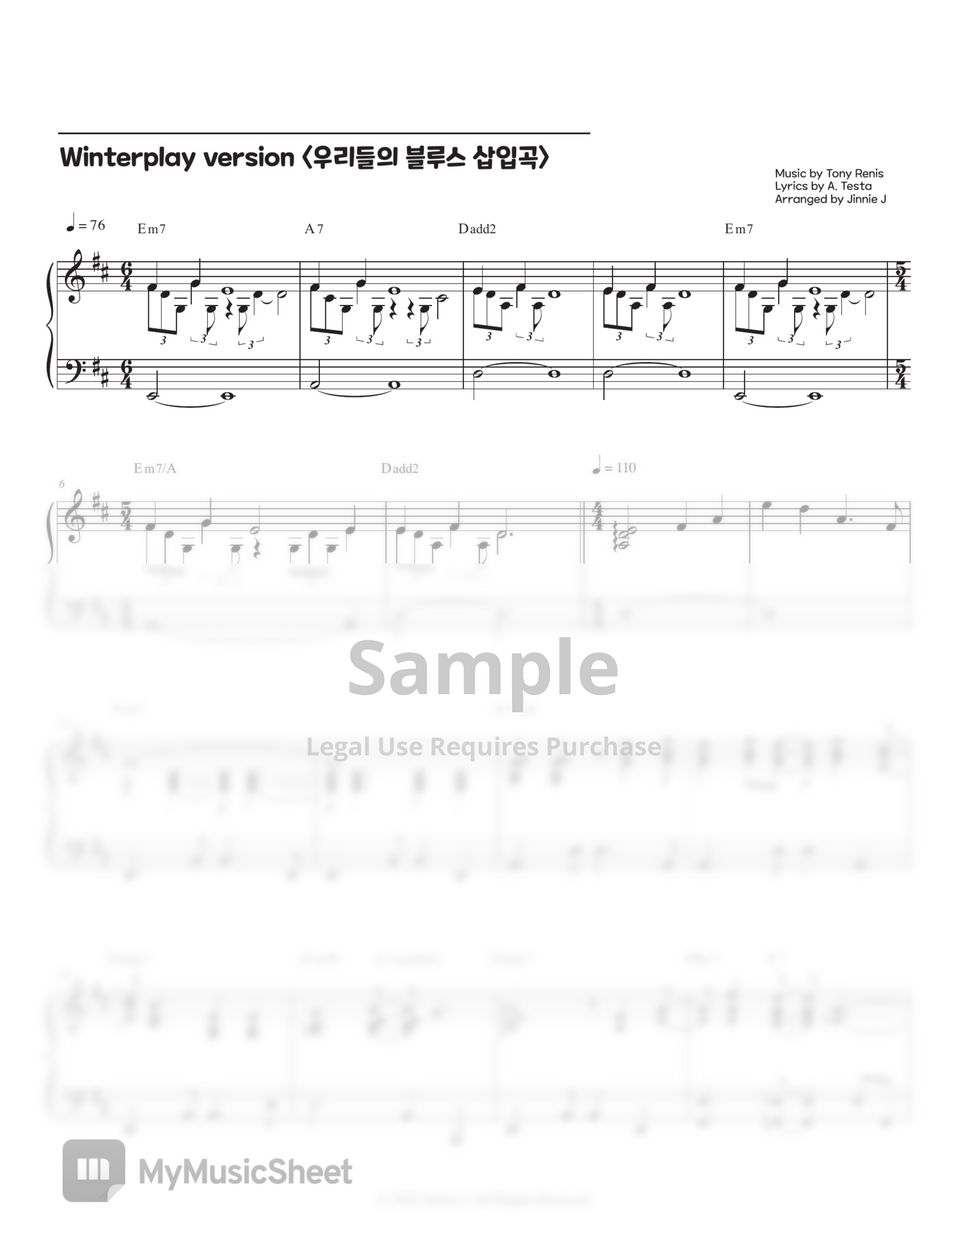 Tony Renis - Quando Quando Quando (Our Blues OST) (Winterplay ver.) by Jinnie J